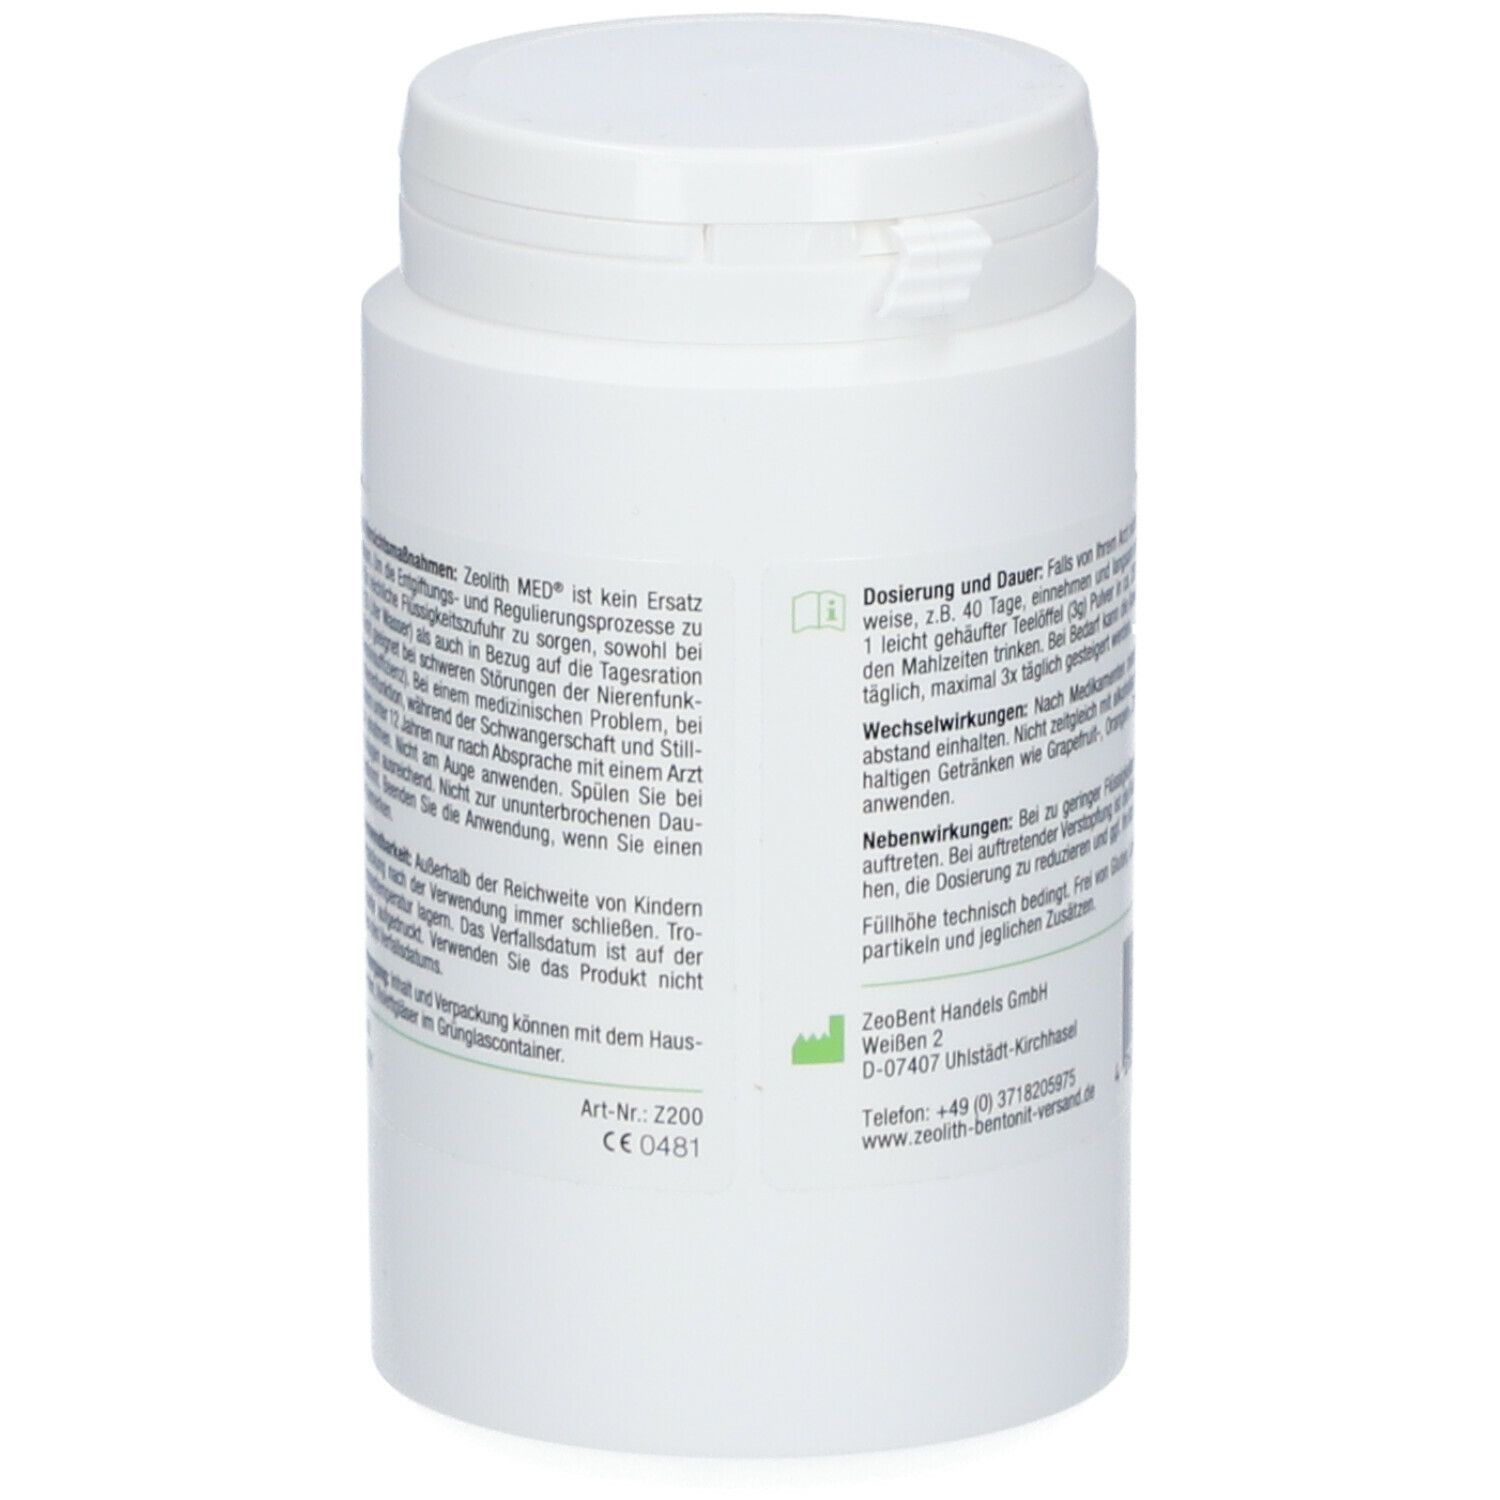 ZeolithMED® Detox-Pulver